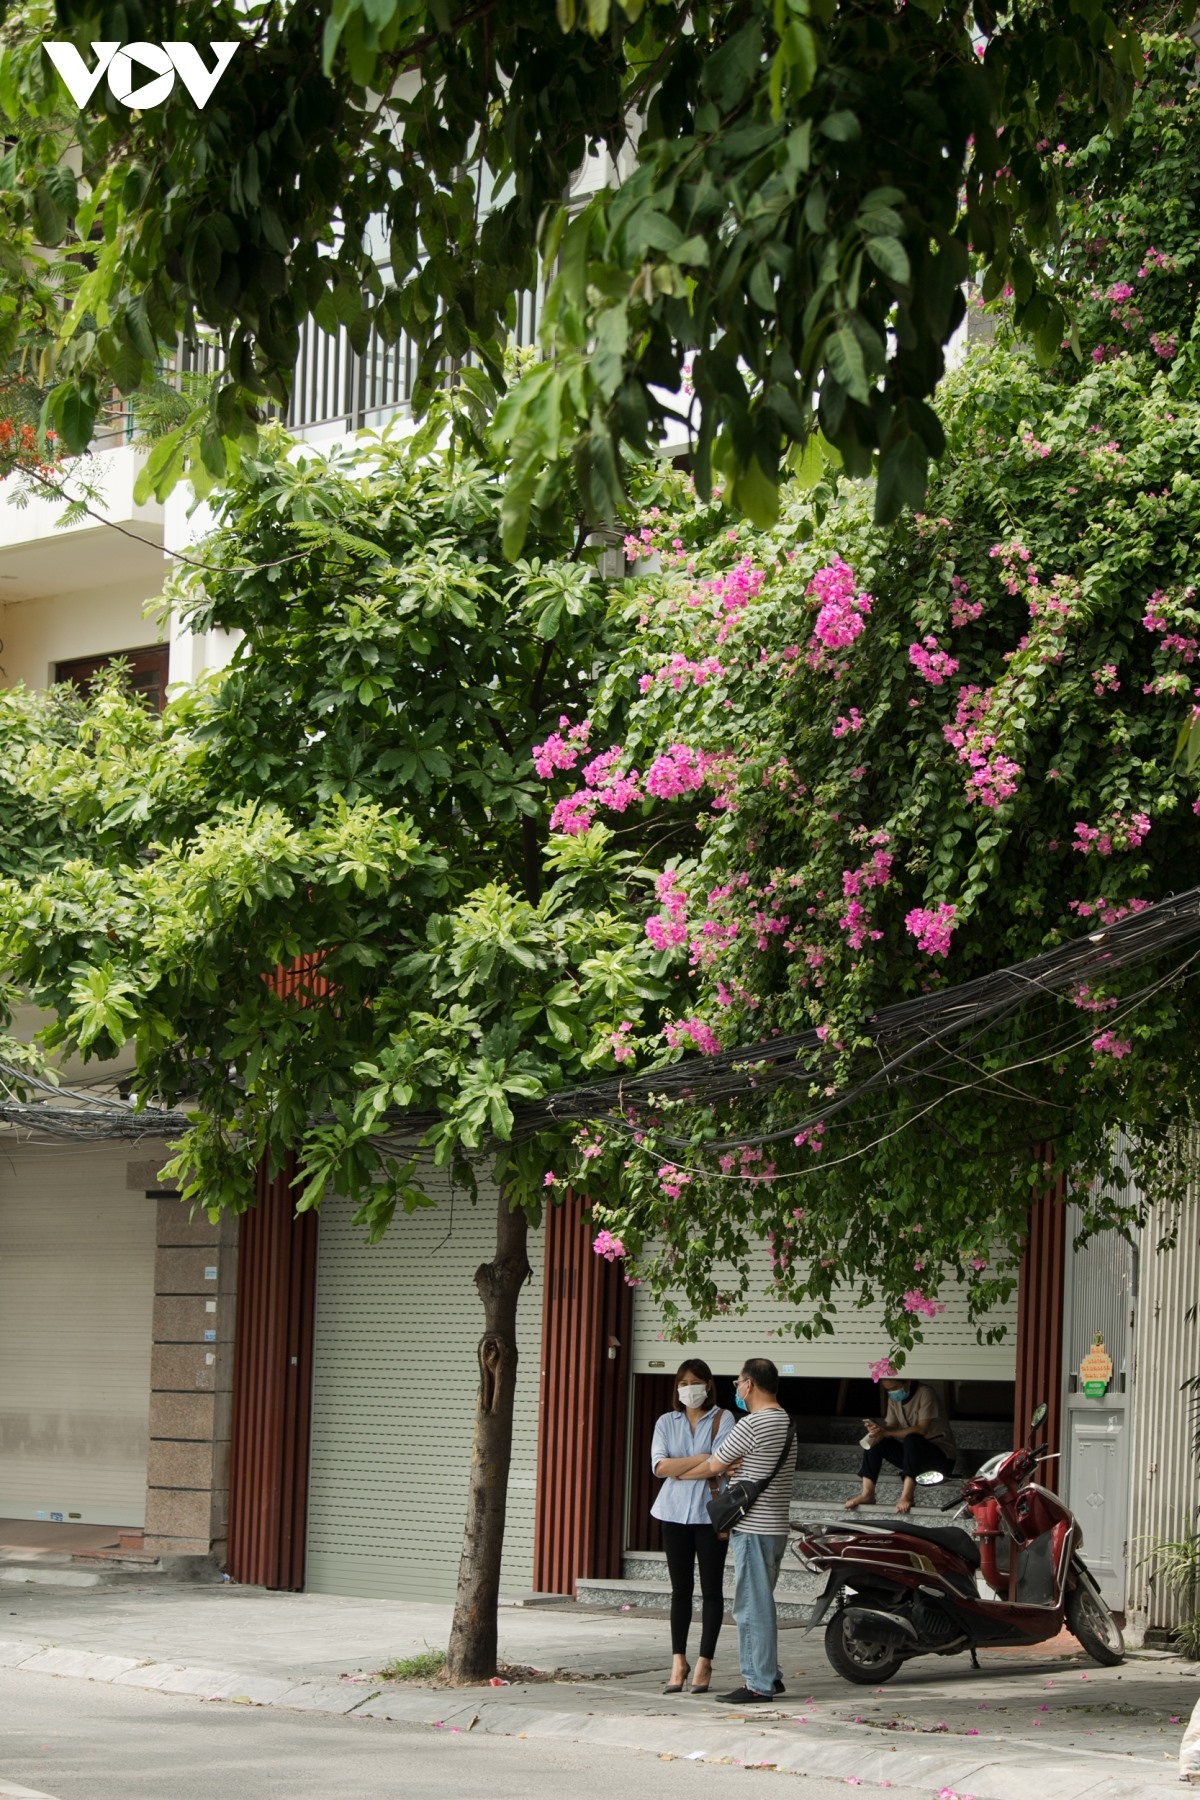 Nếu như hoa phượng, bằng lăng chỉ nở rộ vào một mùa nhất định trong năm thì ngược lại hoa giấy lại lặng lẽ quanh năm tô điểm cho phố phường Hà Nội.